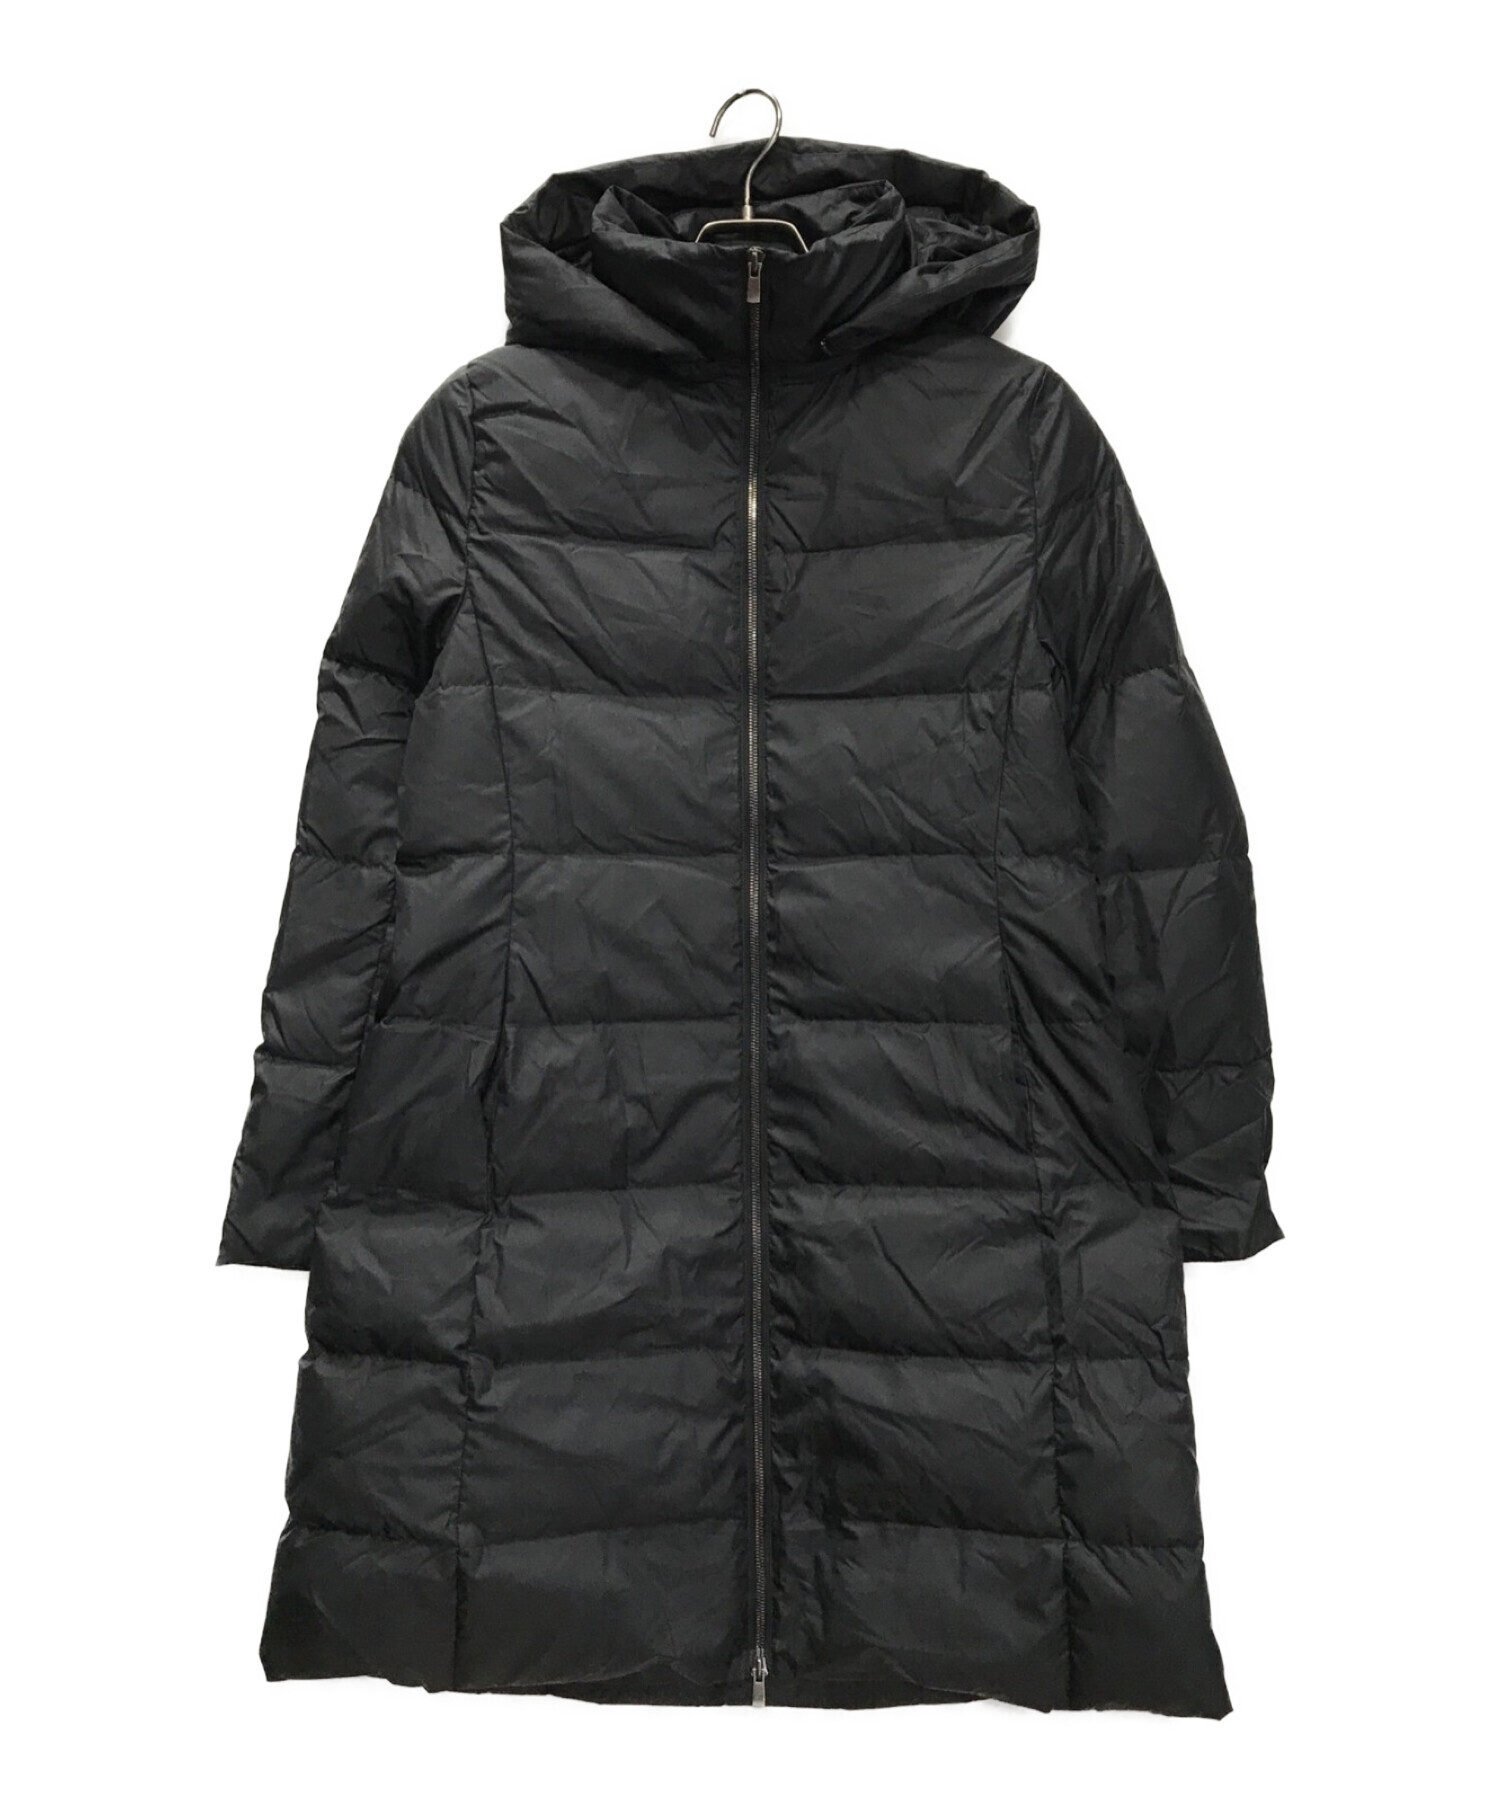 ジャケット/アウターtheory 黒のダウンコート セオリー 着用感あまりなく美品です。